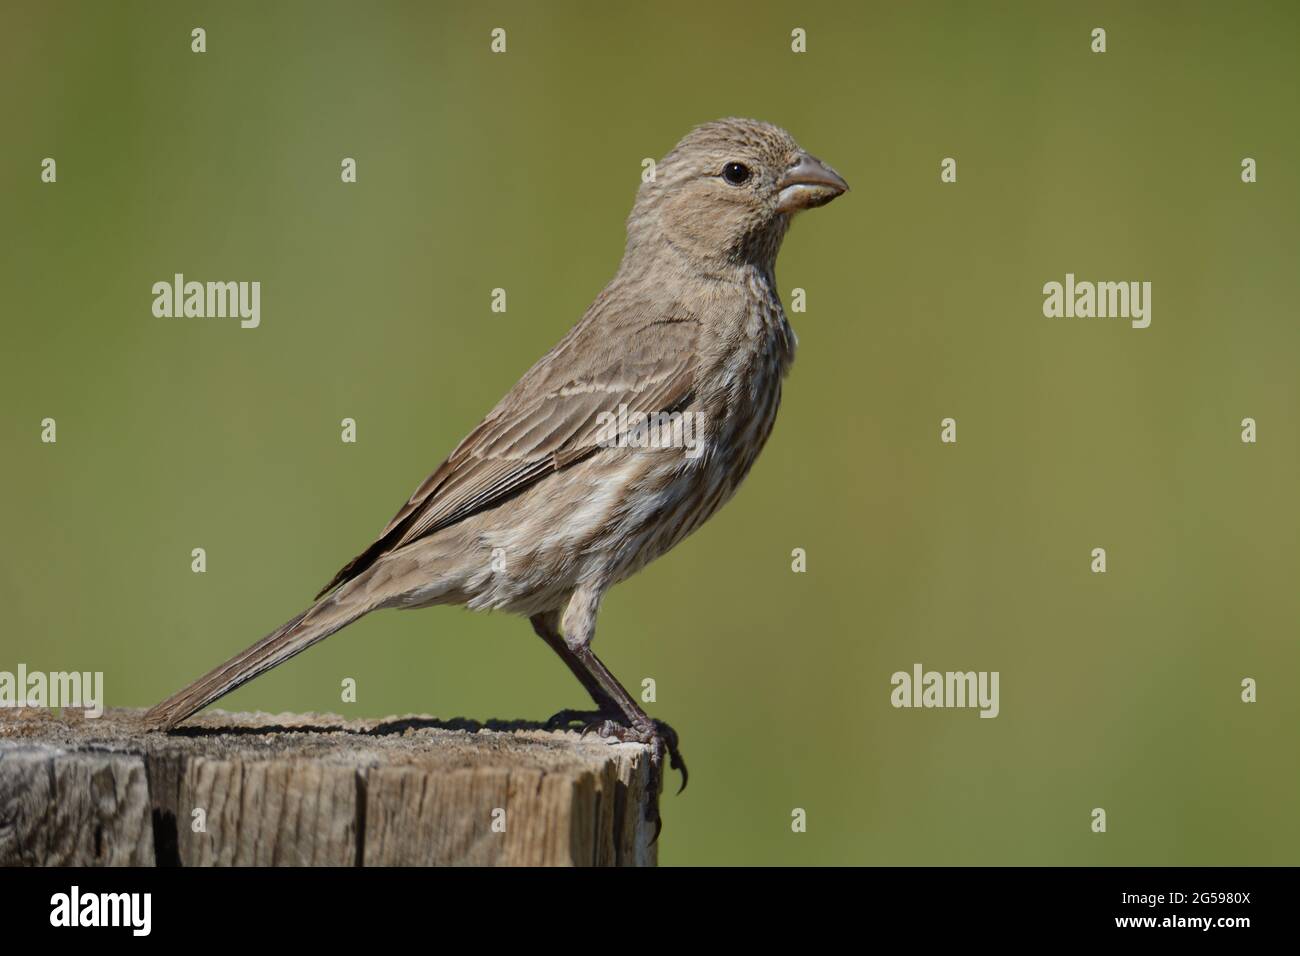 Weiblicher Hausfinkenvögel oder Haemorhous mexicanus, der auf einem Zaunpfosten vor grünem Hintergrund thront Stockfoto